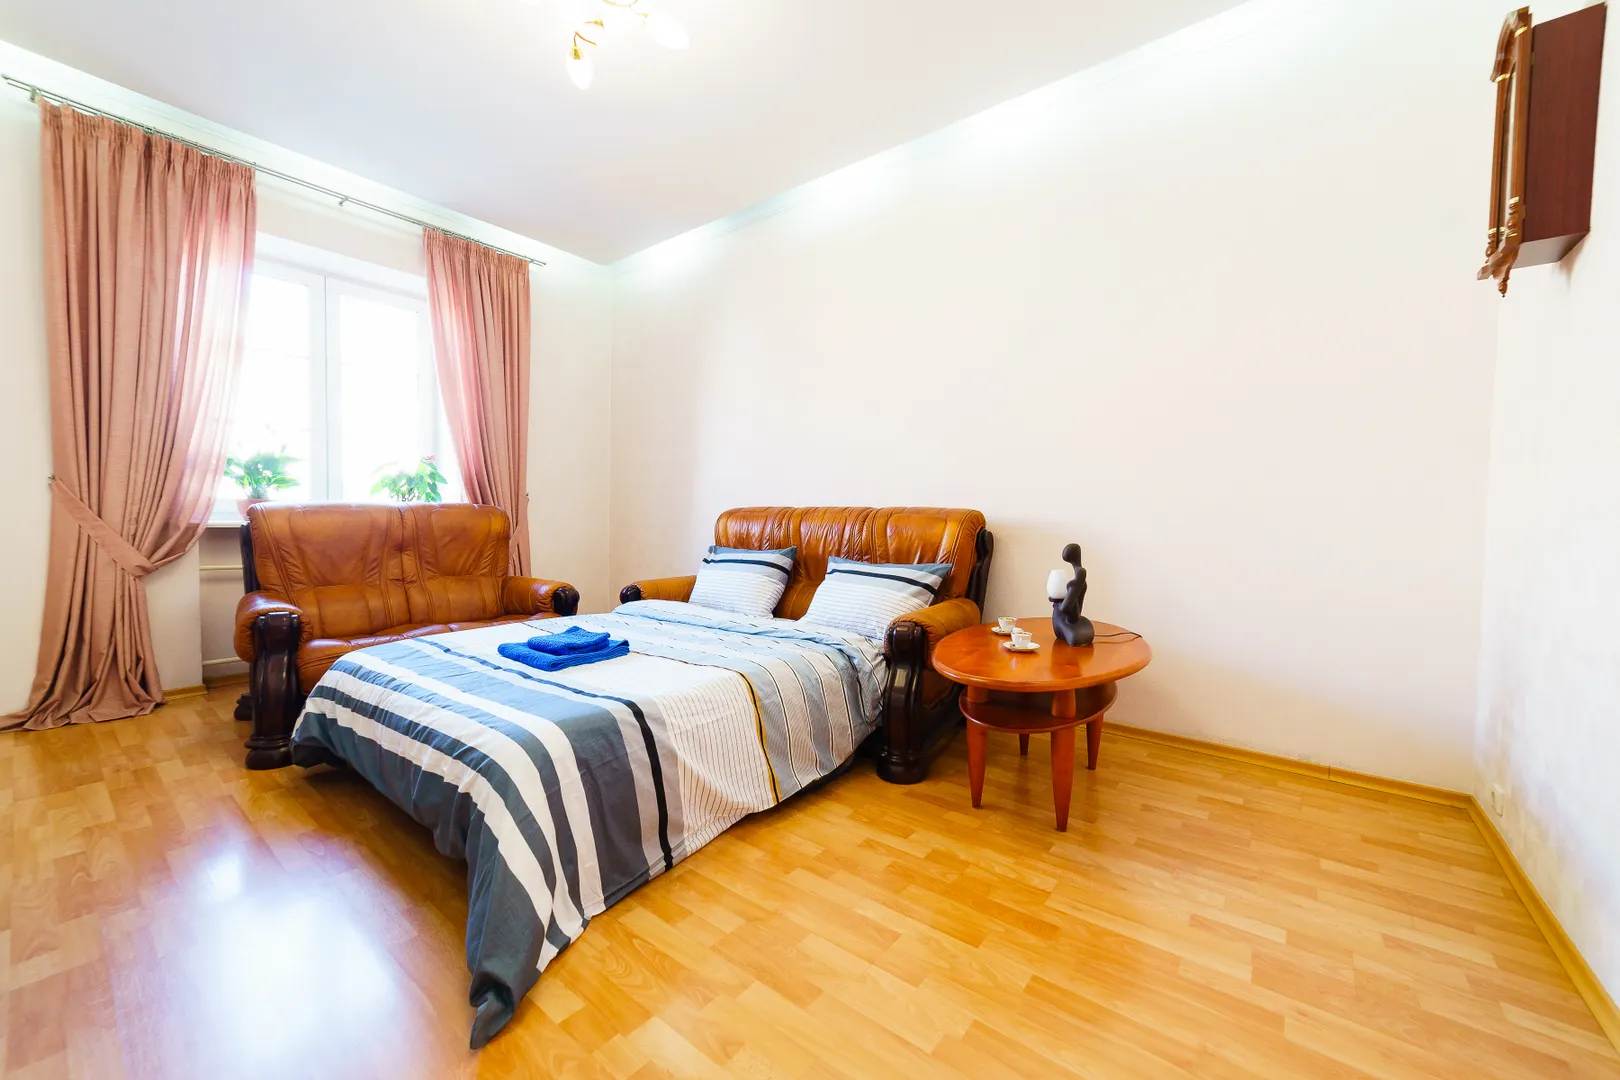 Гостиная легко трансформируется в отдельную спальню с двуспальным местом для сна и отдыха